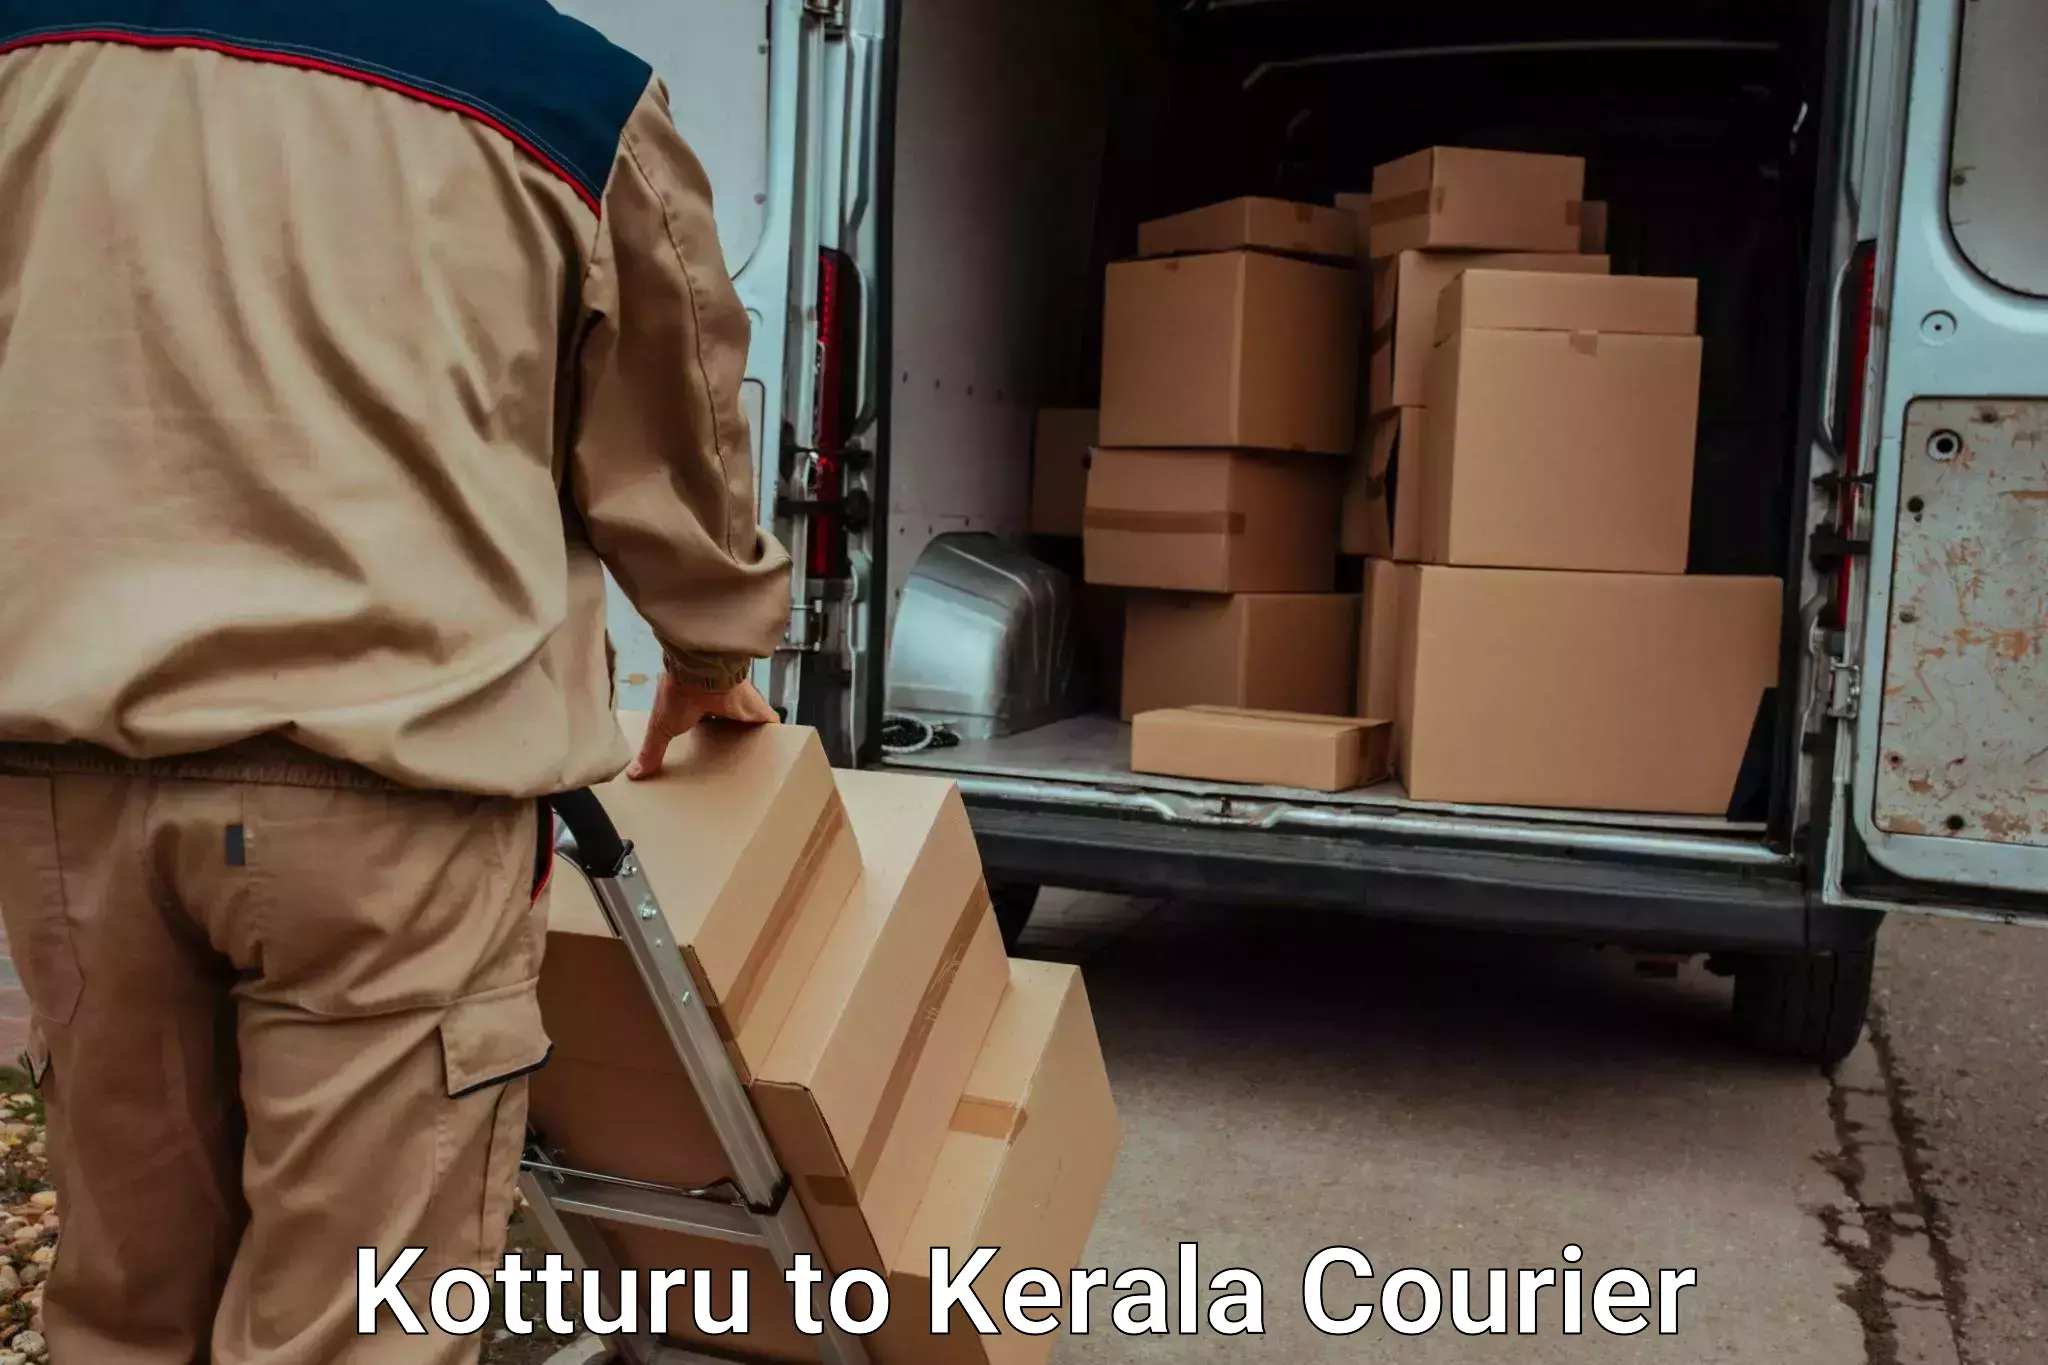 Efficient household moving Kotturu to Ernakulam